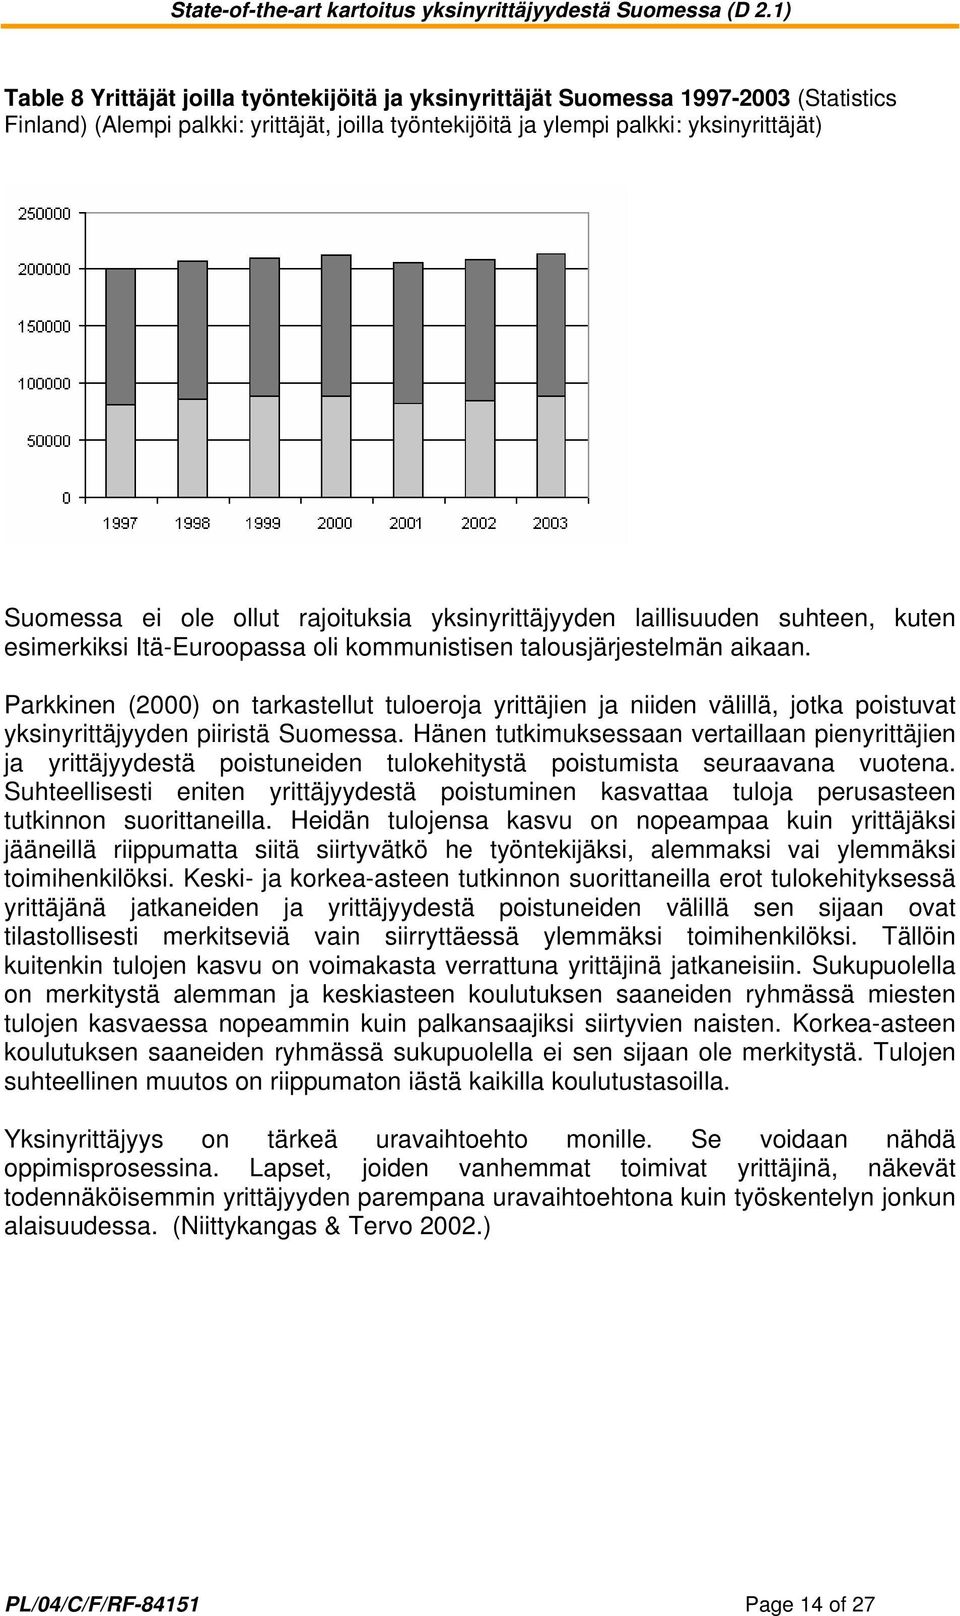 Parkkinen (2000) on tarkastellut tuloeroja yrittäjien ja niiden välillä, jotka poistuvat yksinyrittäjyyden piiristä Suomessa.